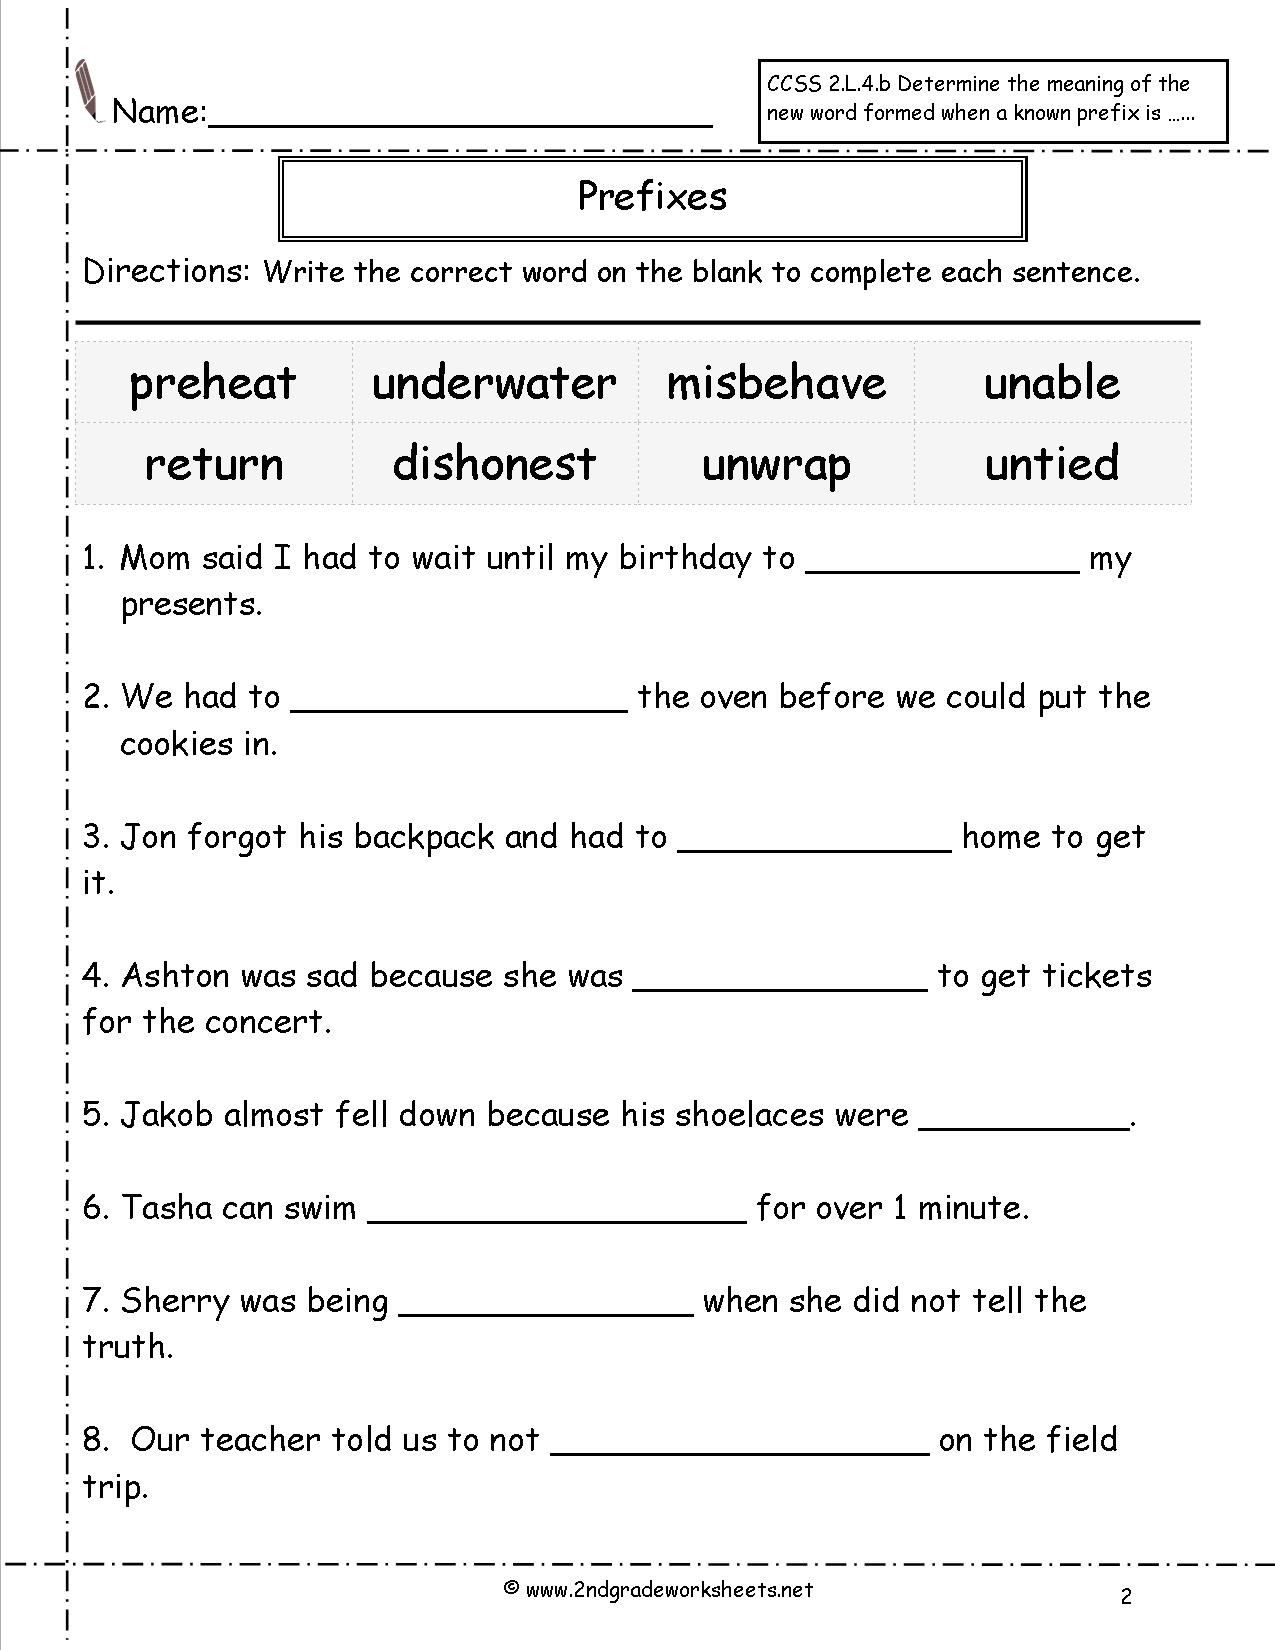 Suffixes Worksheets 4th Grade Second Grade Prefixes Worksheets